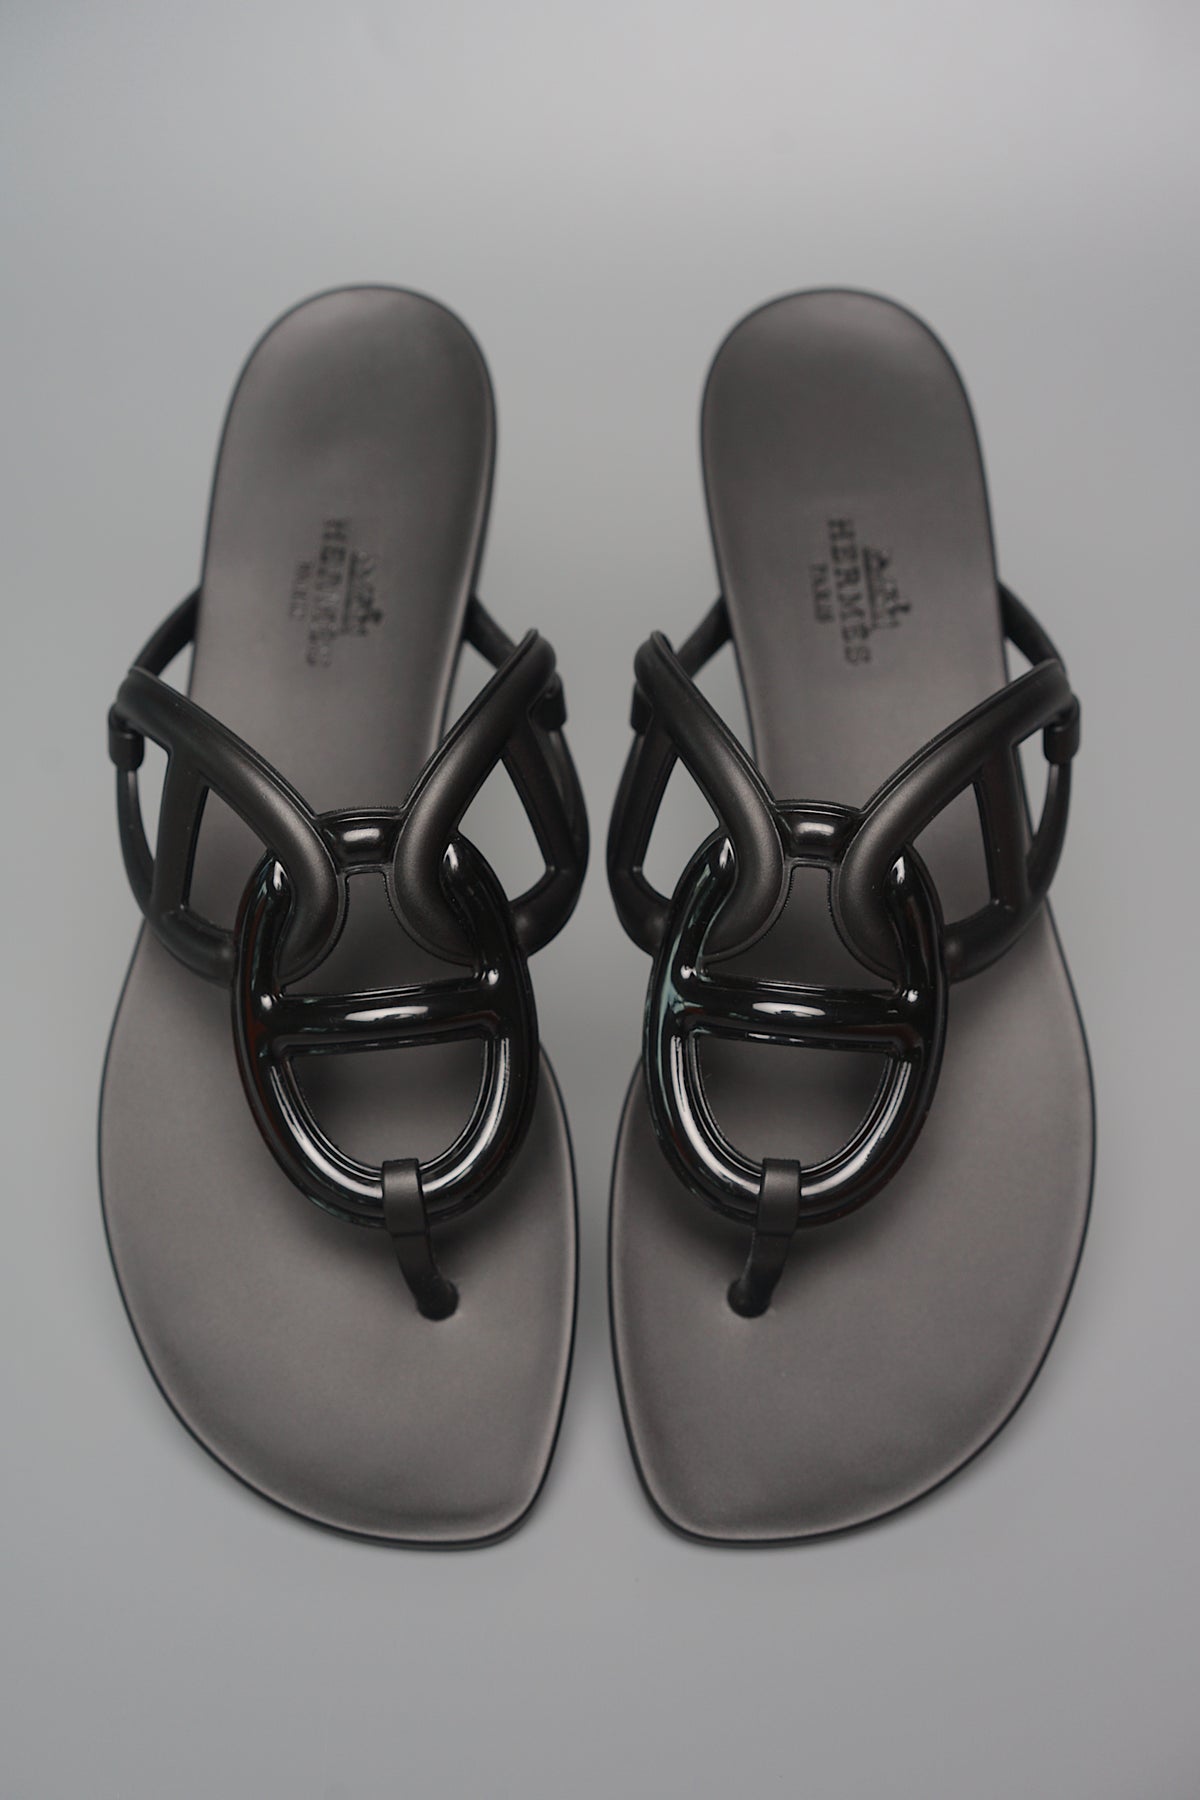 Hermes Egerie Sandals in Noir Size 38 (Brand New)– orangeporter